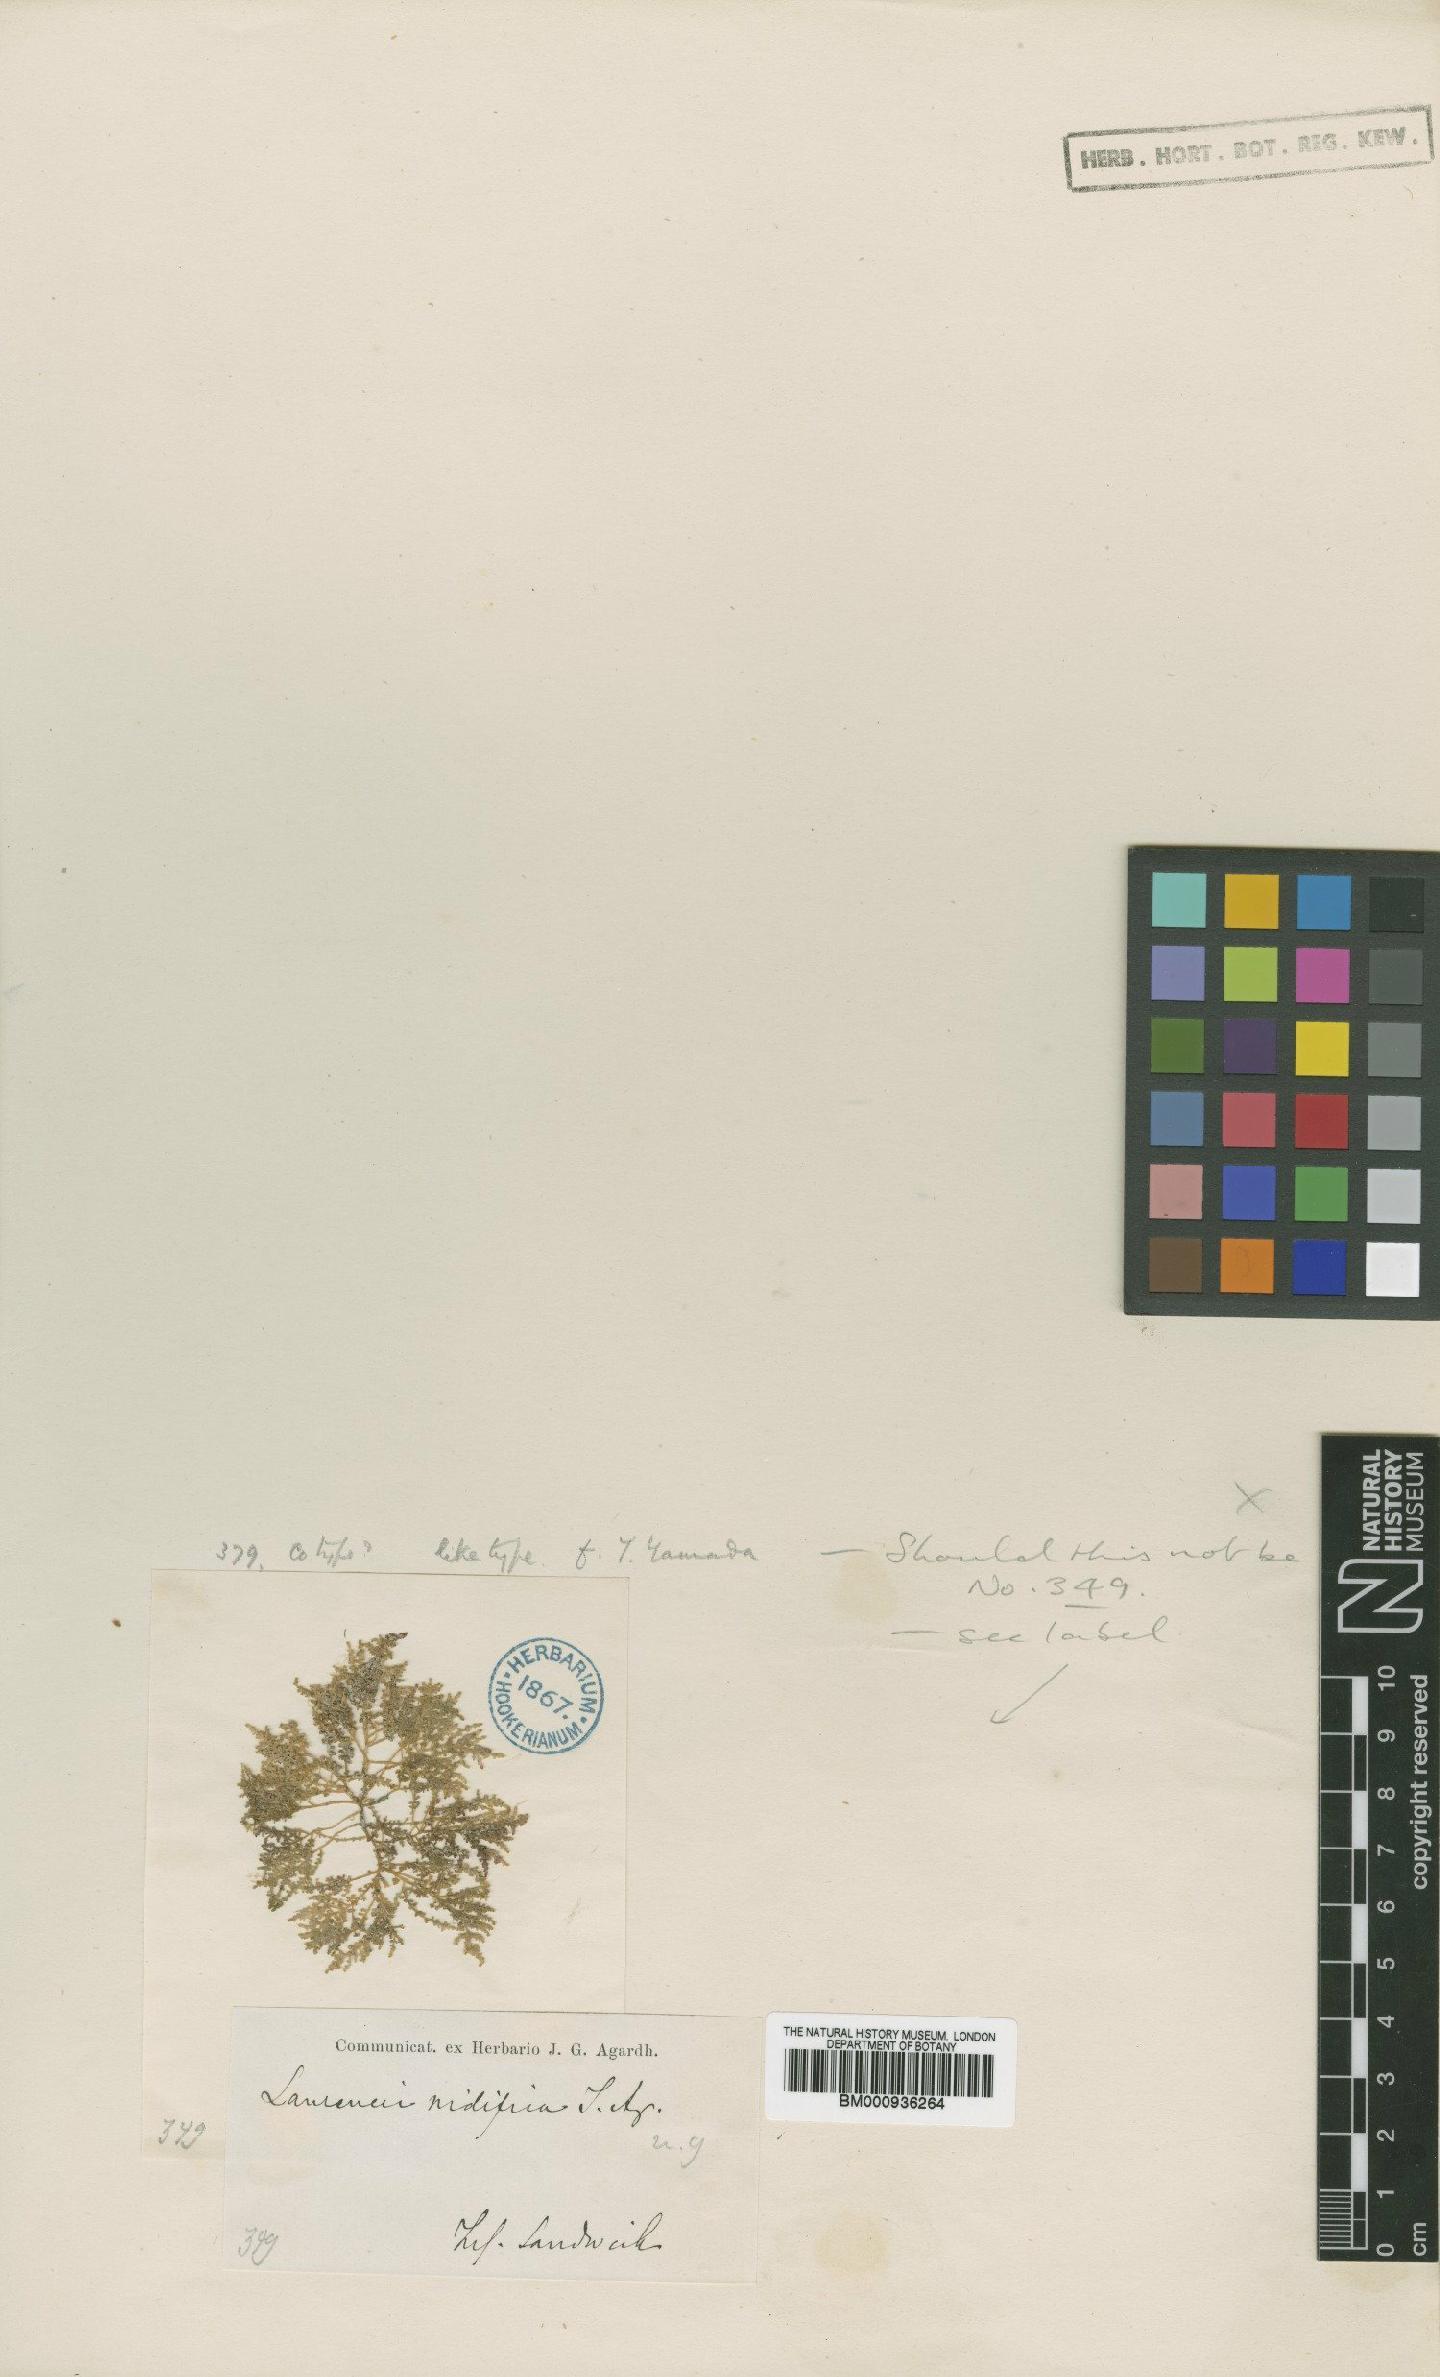 To NHMUK collection (Laurencia nidifica J.Agardh; Isolectotype; NHMUK:ecatalogue:438096)